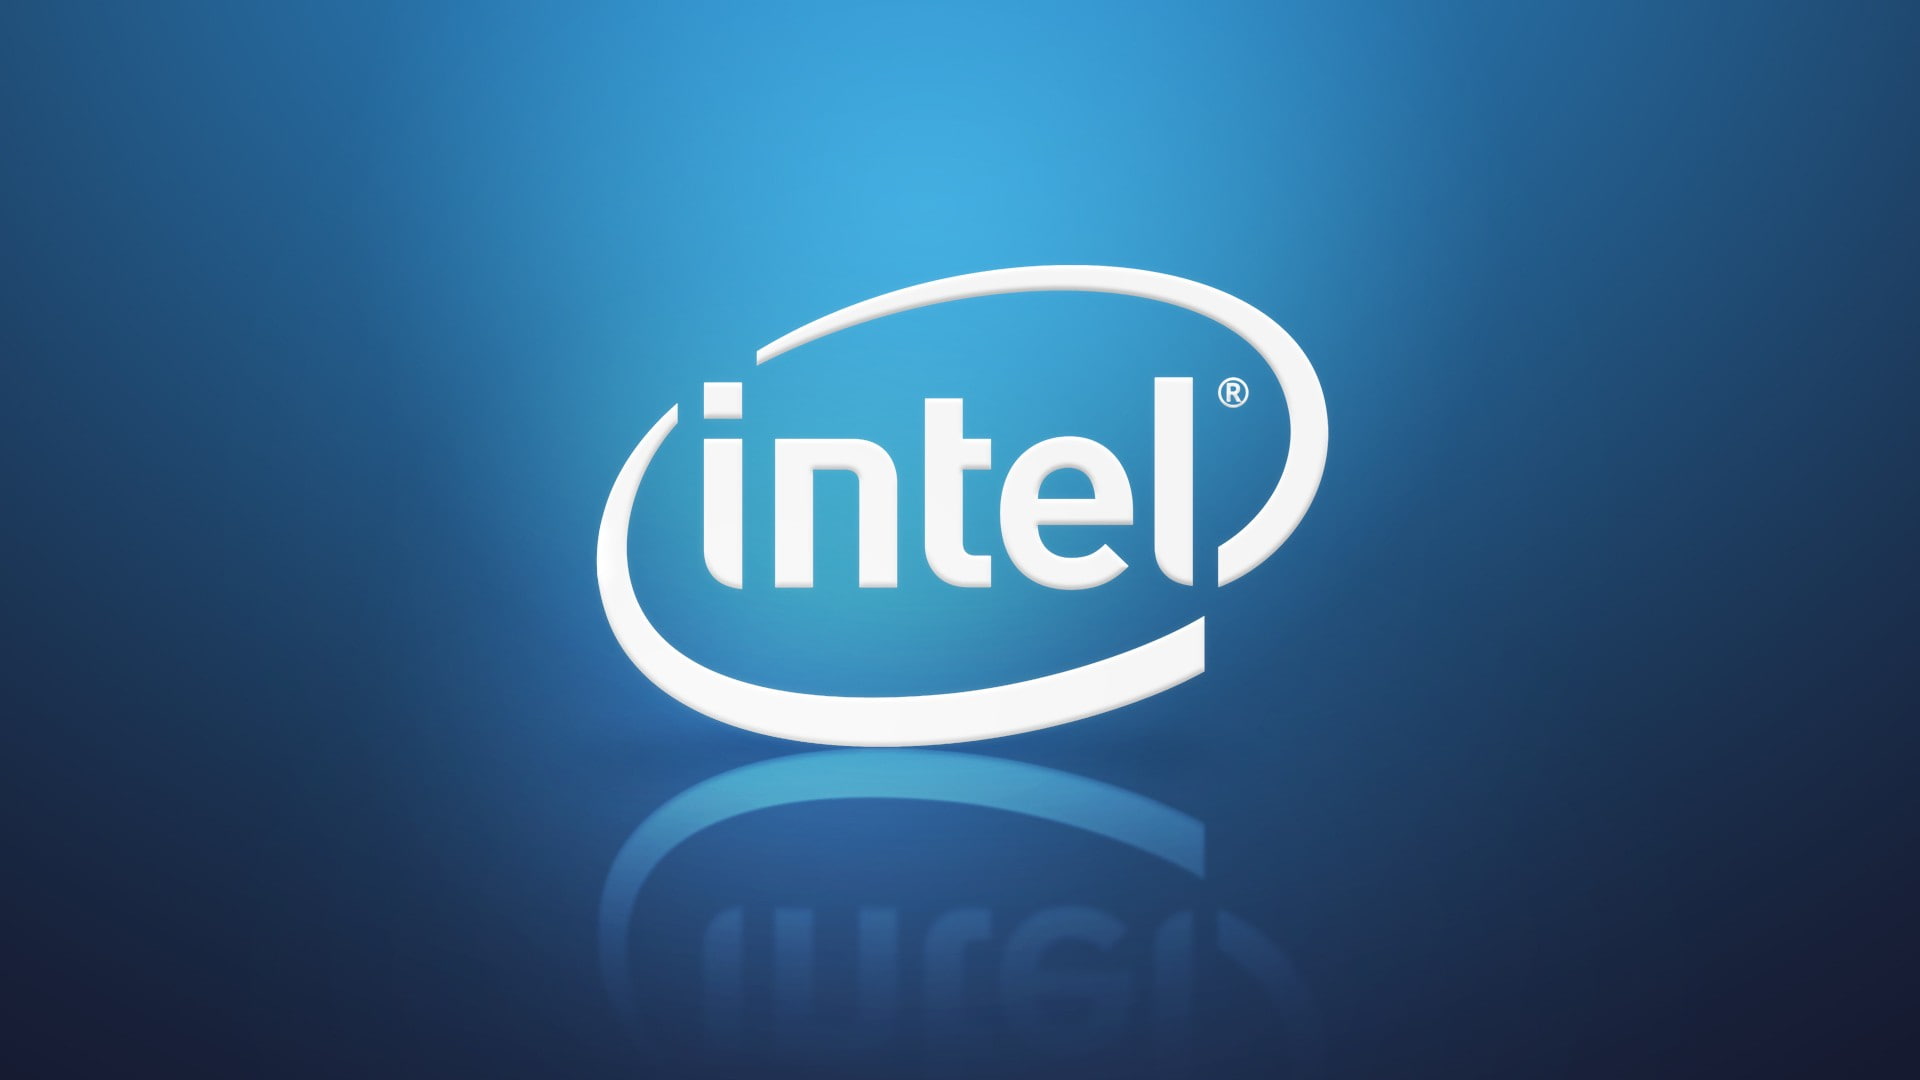 Intel logo, technology, computer, CPU, blue, communication, text